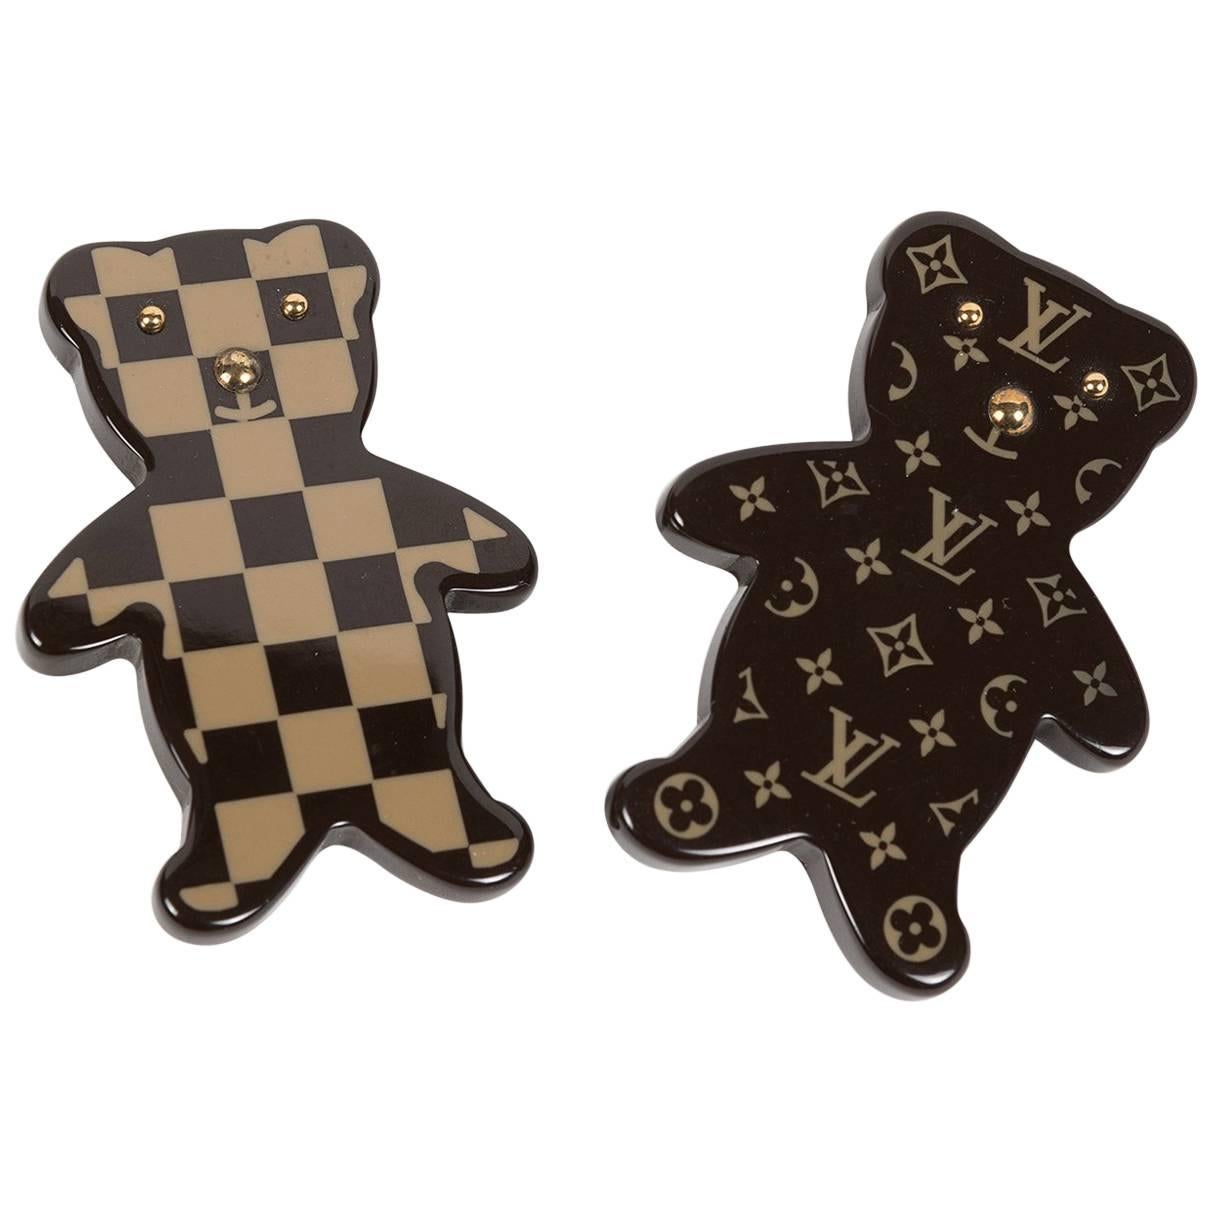 Louis Vuitton Teddy Bear Pin Brooch Set